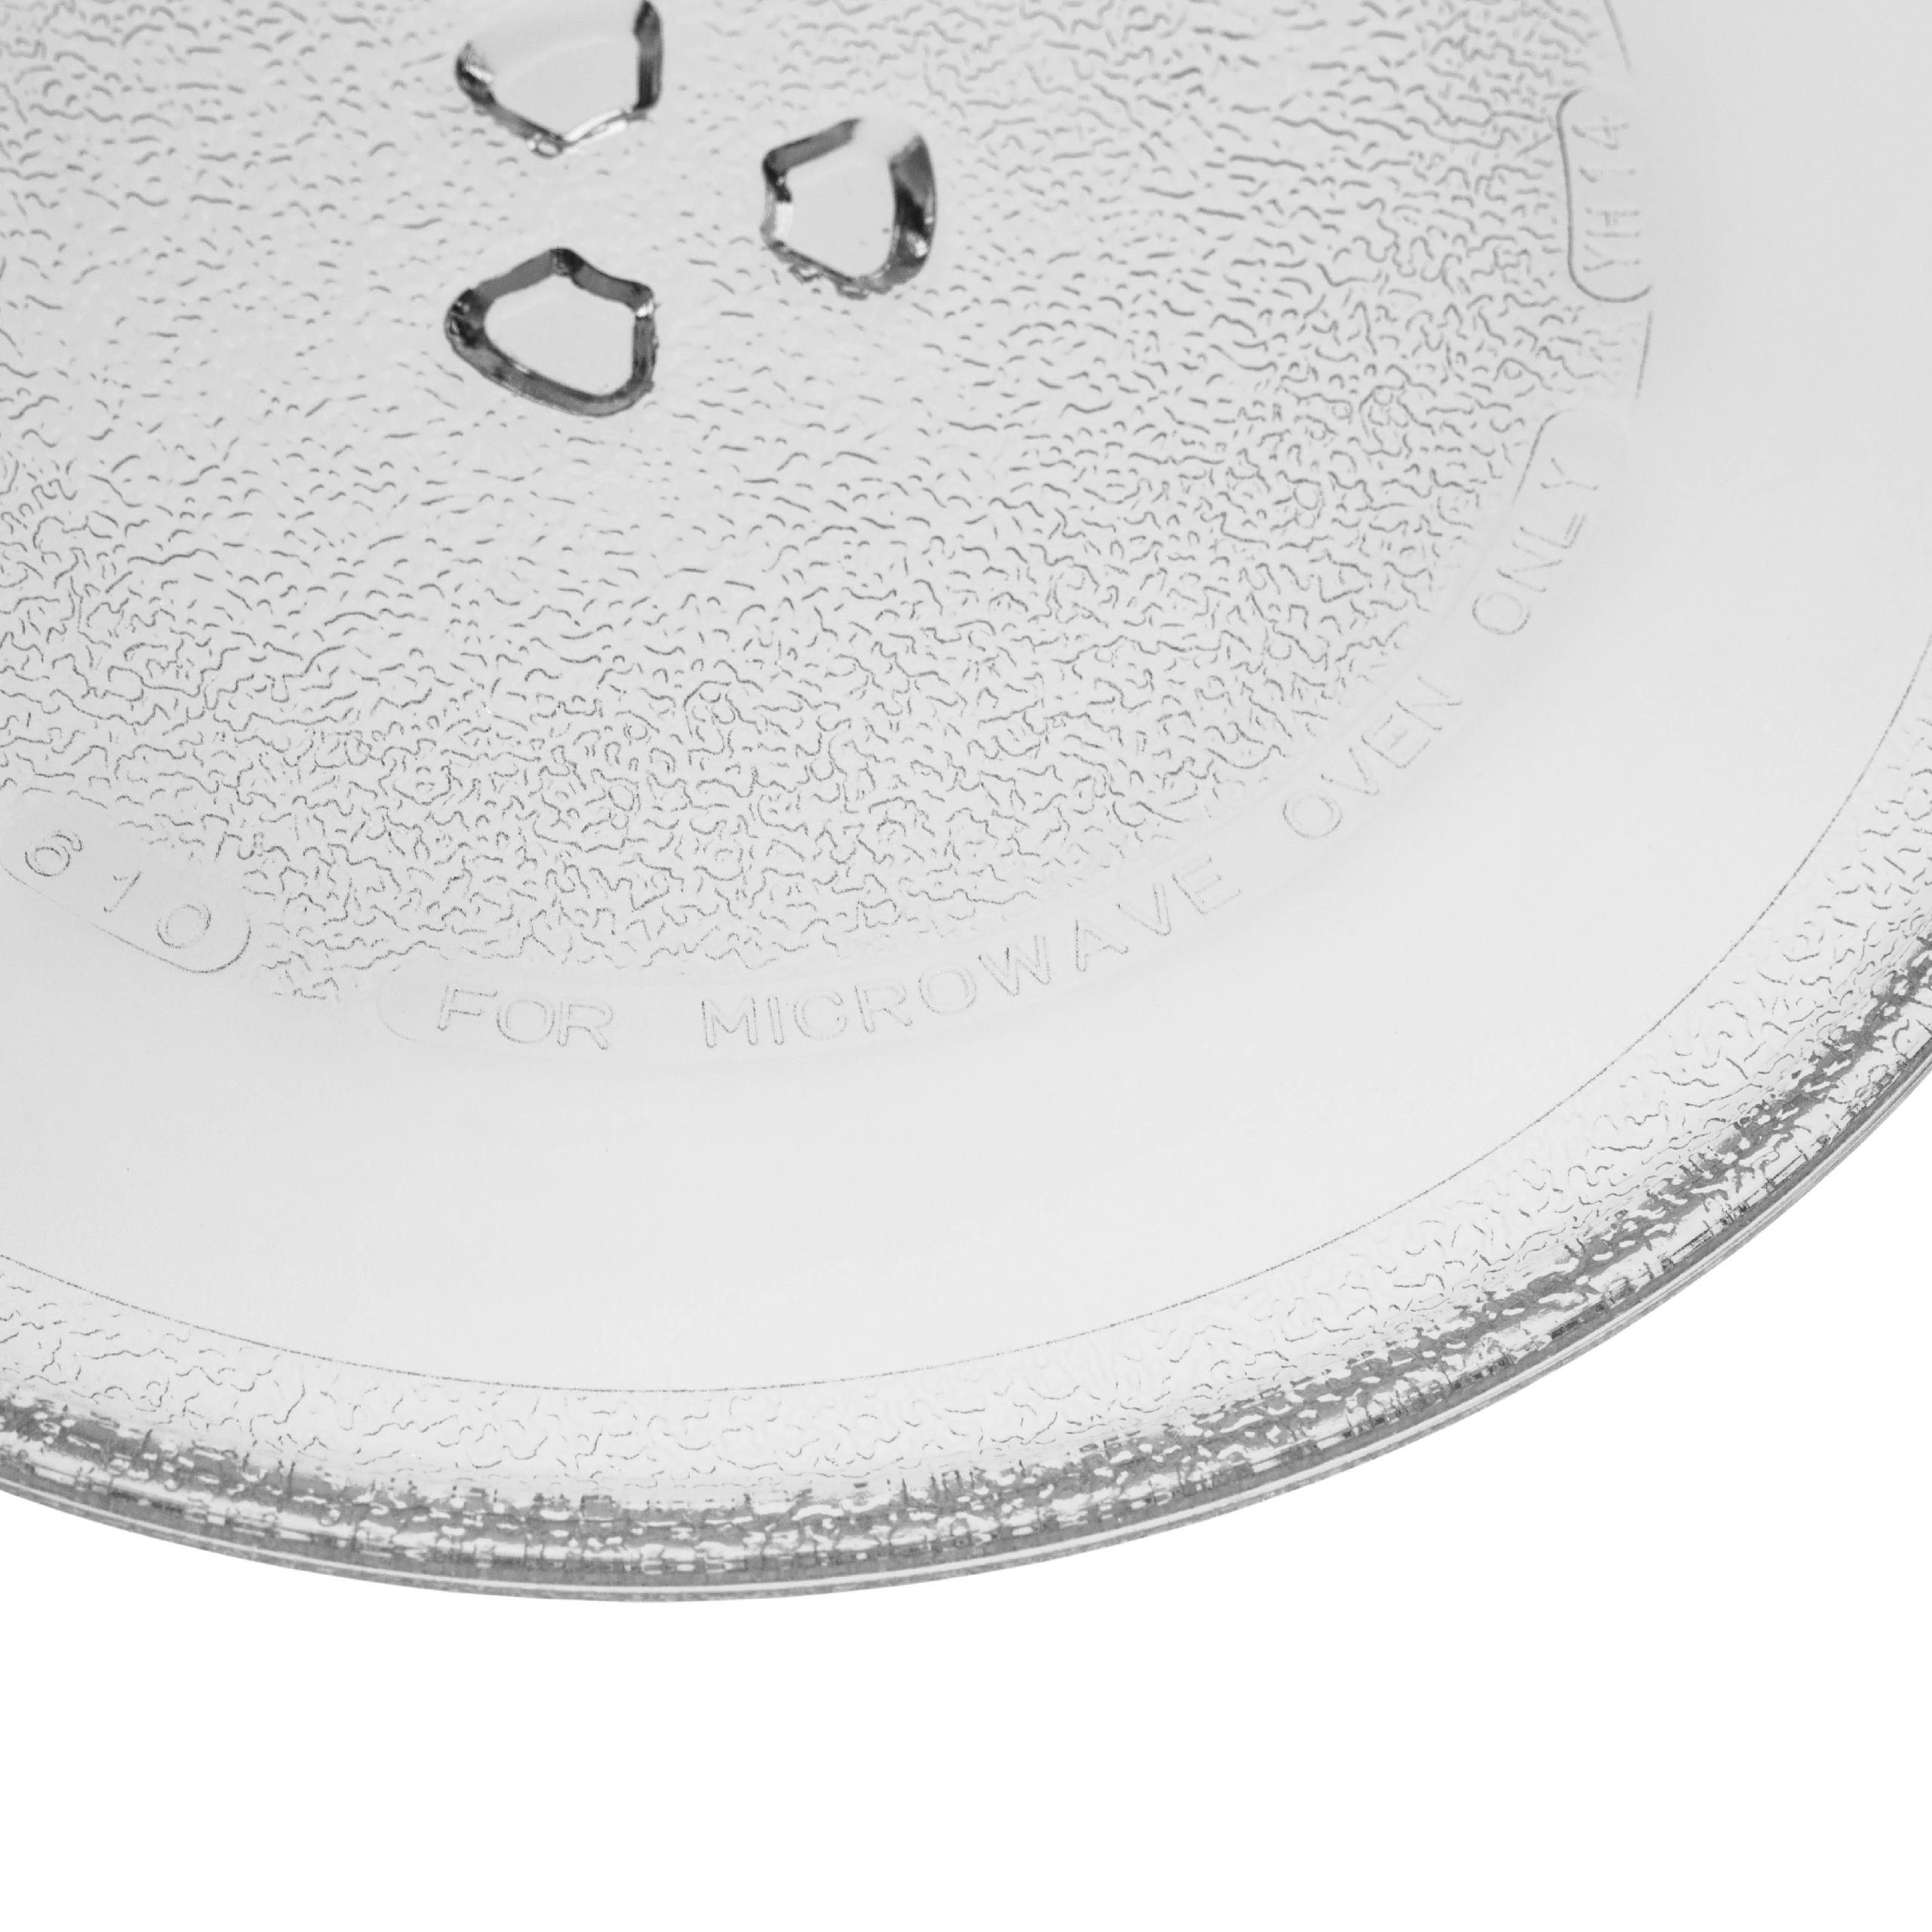 vidrio plato para microondas, plato giratorio de 25,5 cm para microondas Bosch etc.